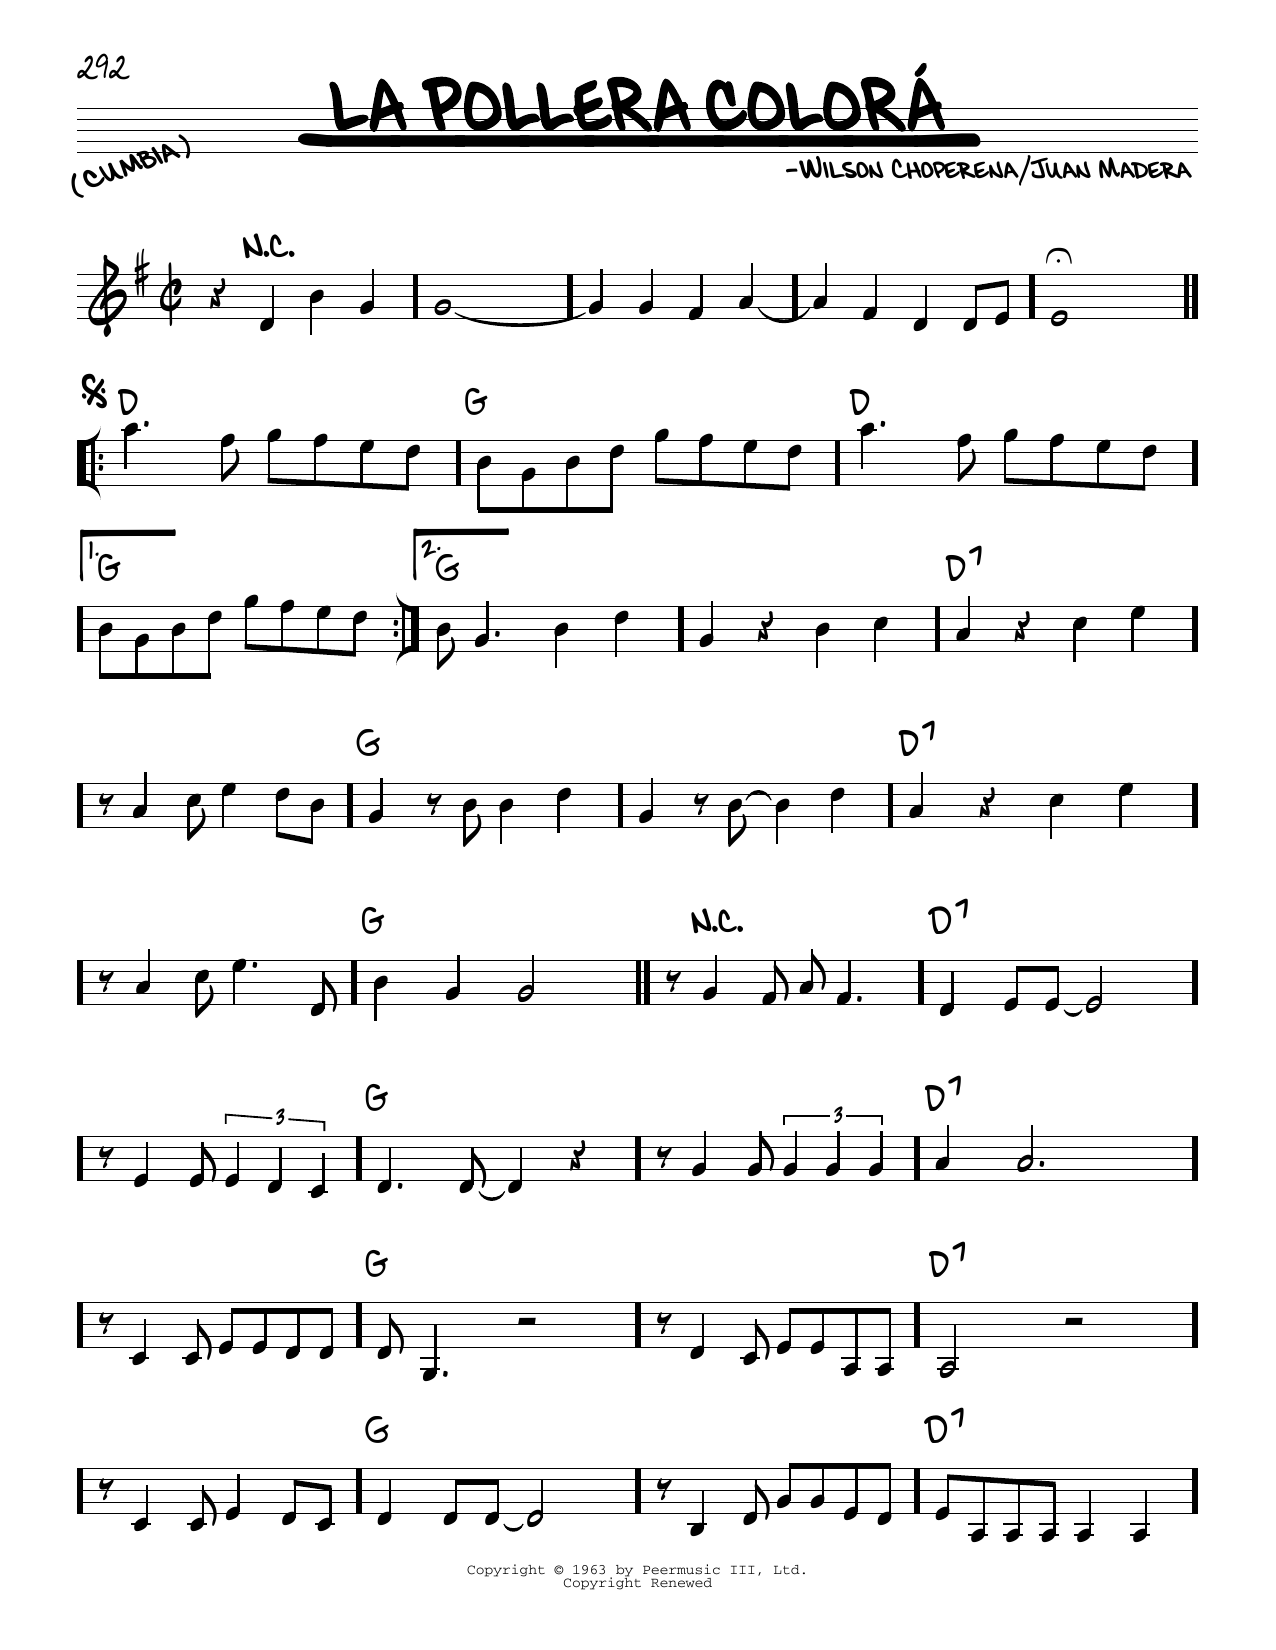 Juan Madera La Pollera Colorá Sheet Music Notes & Chords for Real Book – Melody & Chords - Download or Print PDF